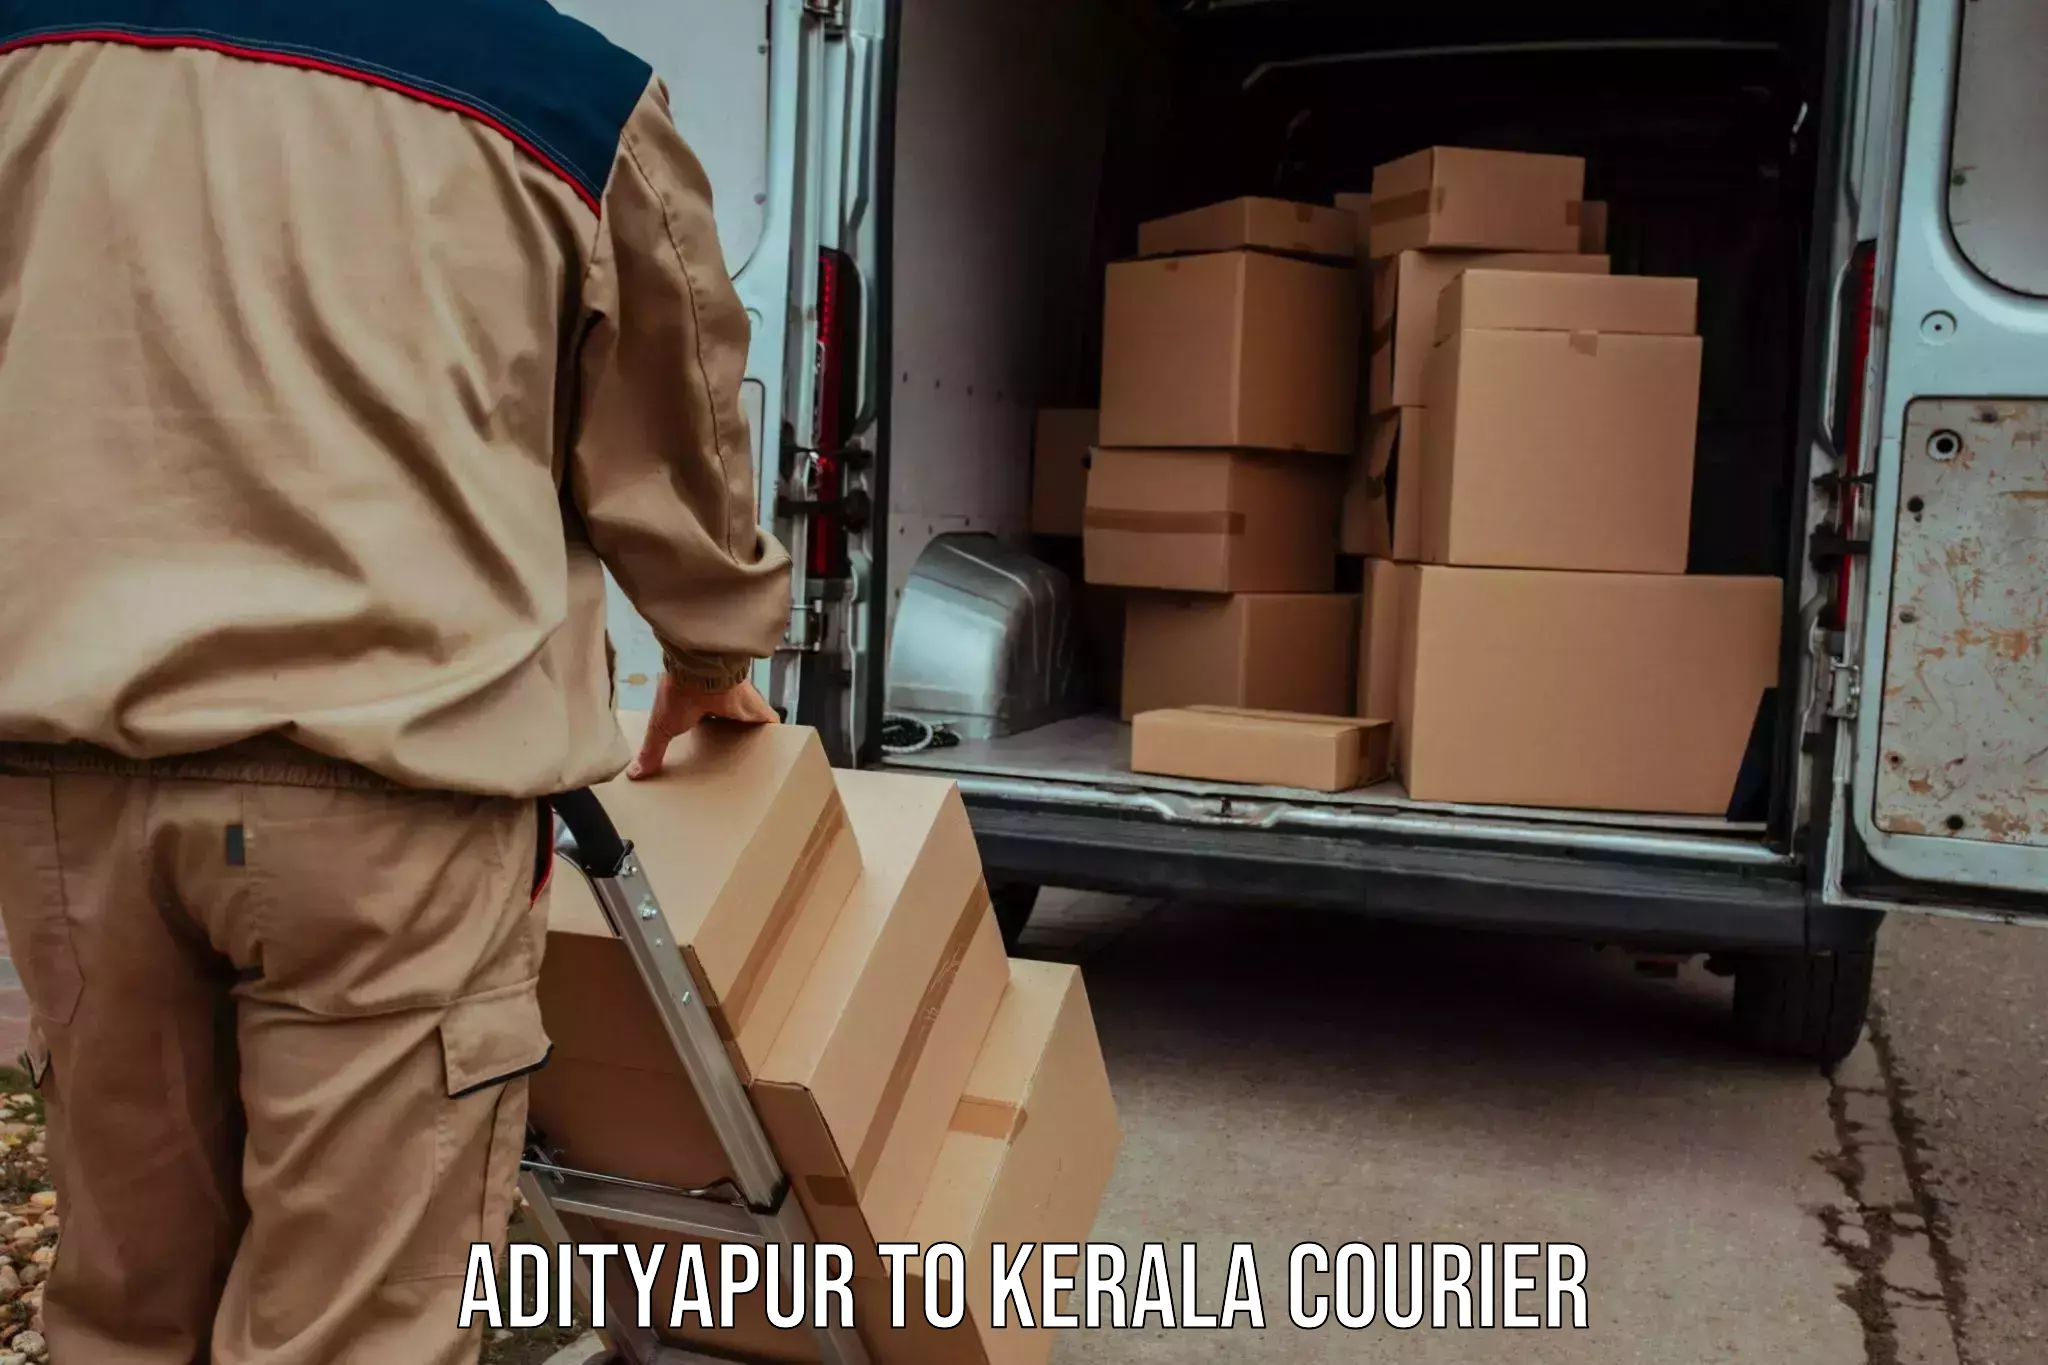 Regular parcel service Adityapur to Perumbavoor